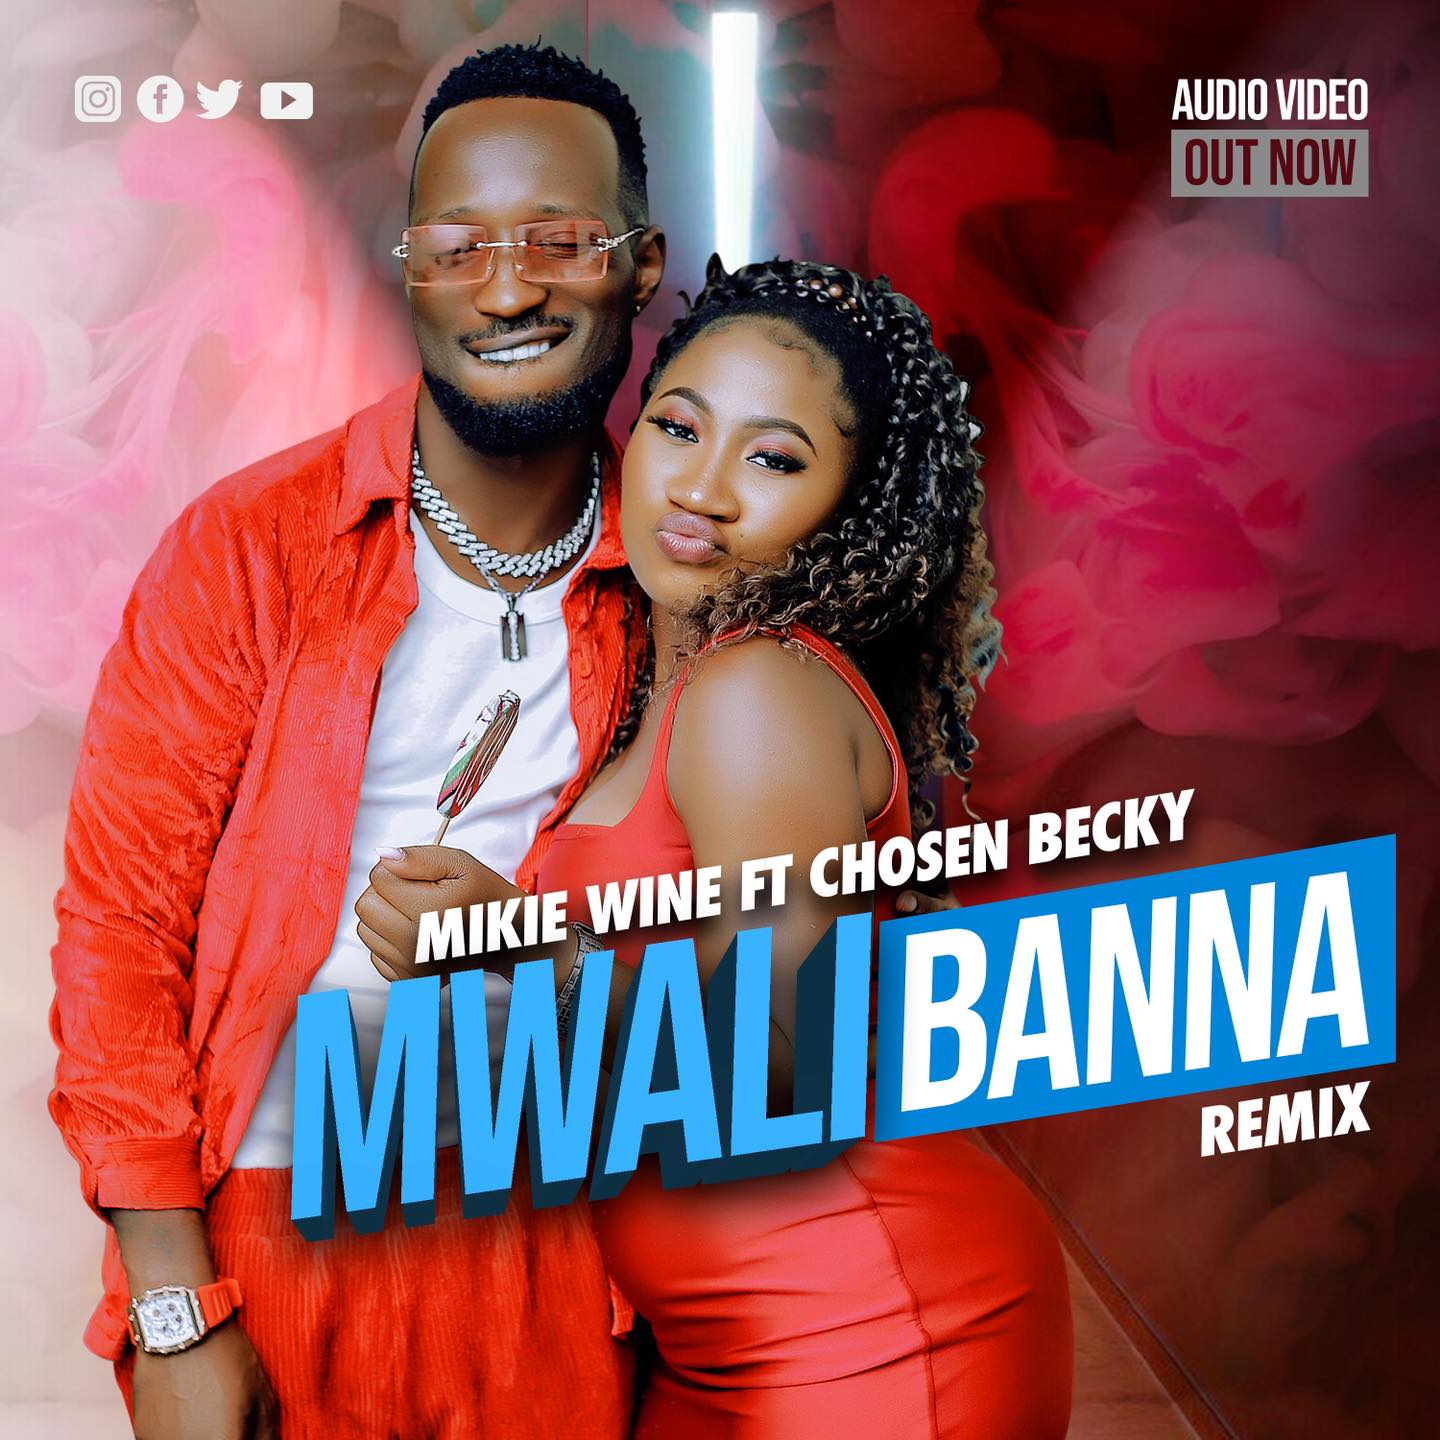 Mwali Bana Remix - Chosen Becky ft Mikie Wine